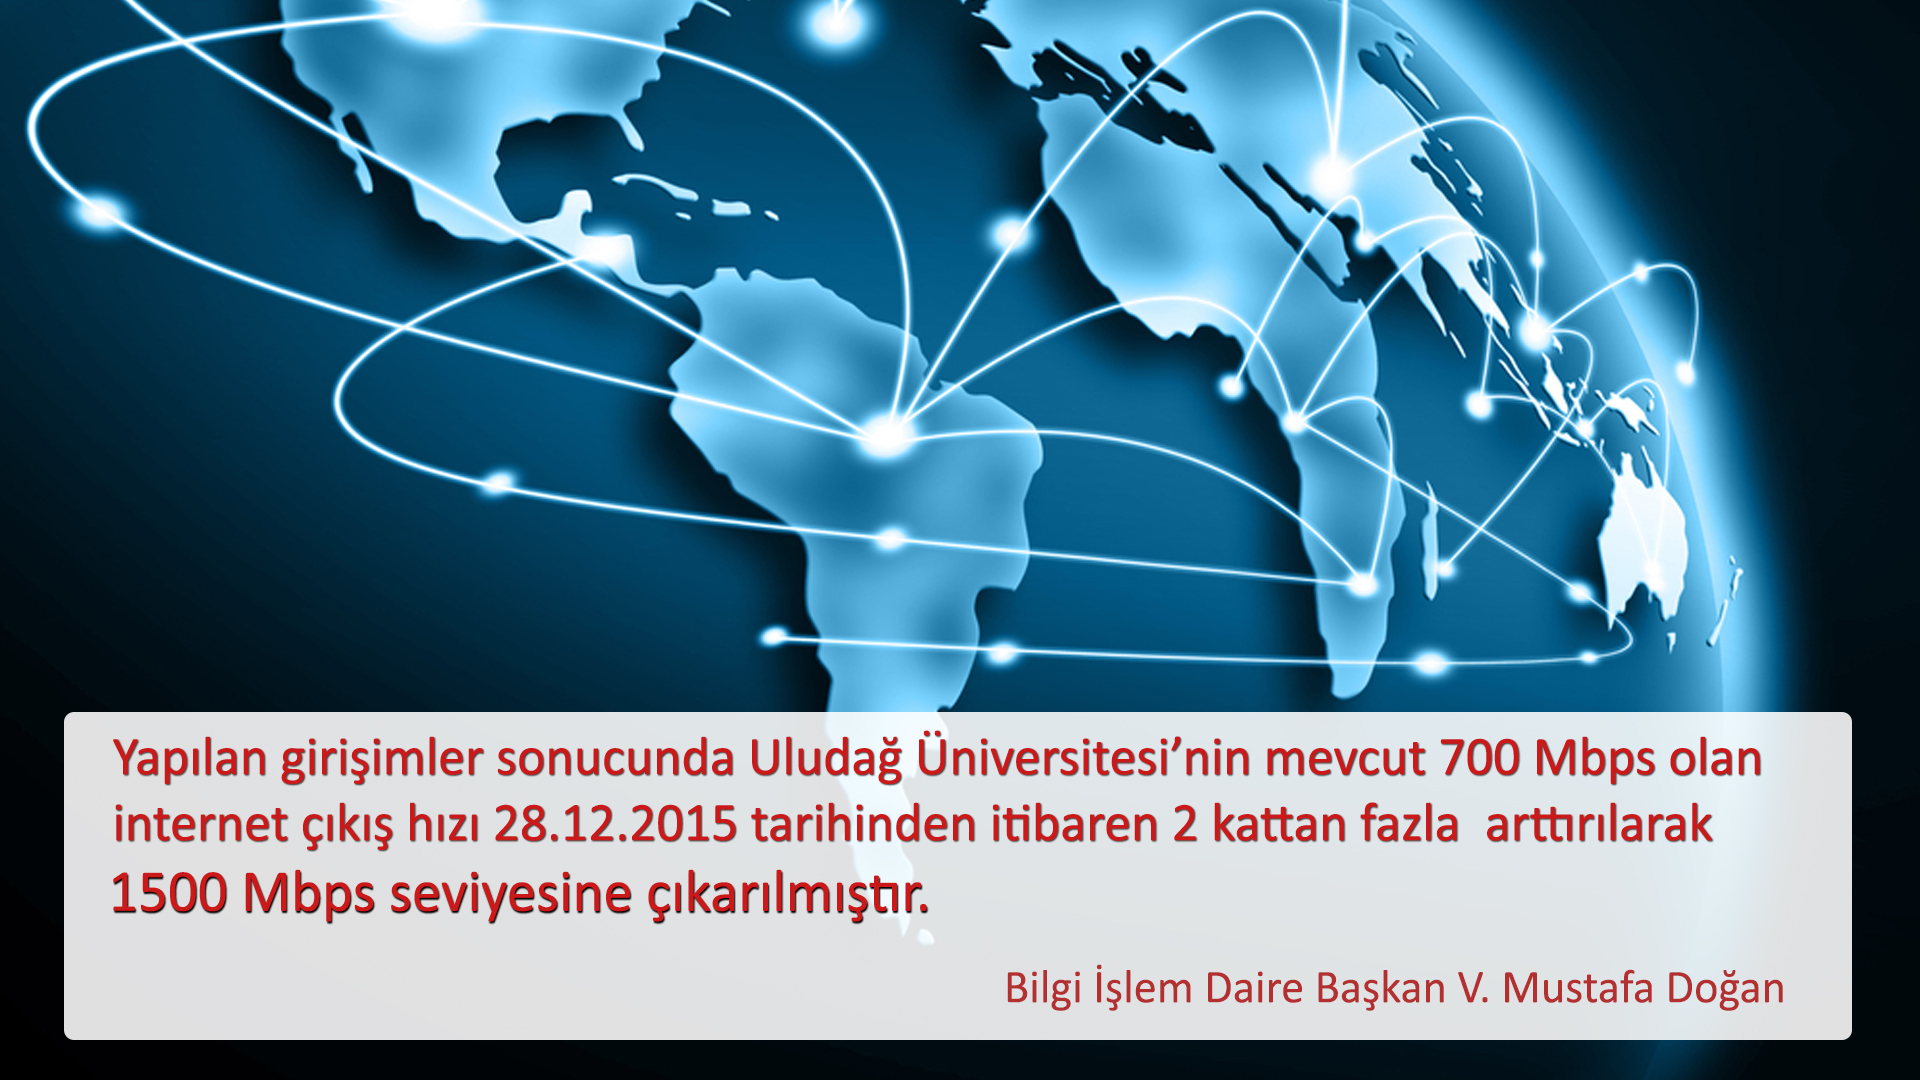  Uludağ Üniversitesi İnternet Altyapısında Yapılan İyileştirme 